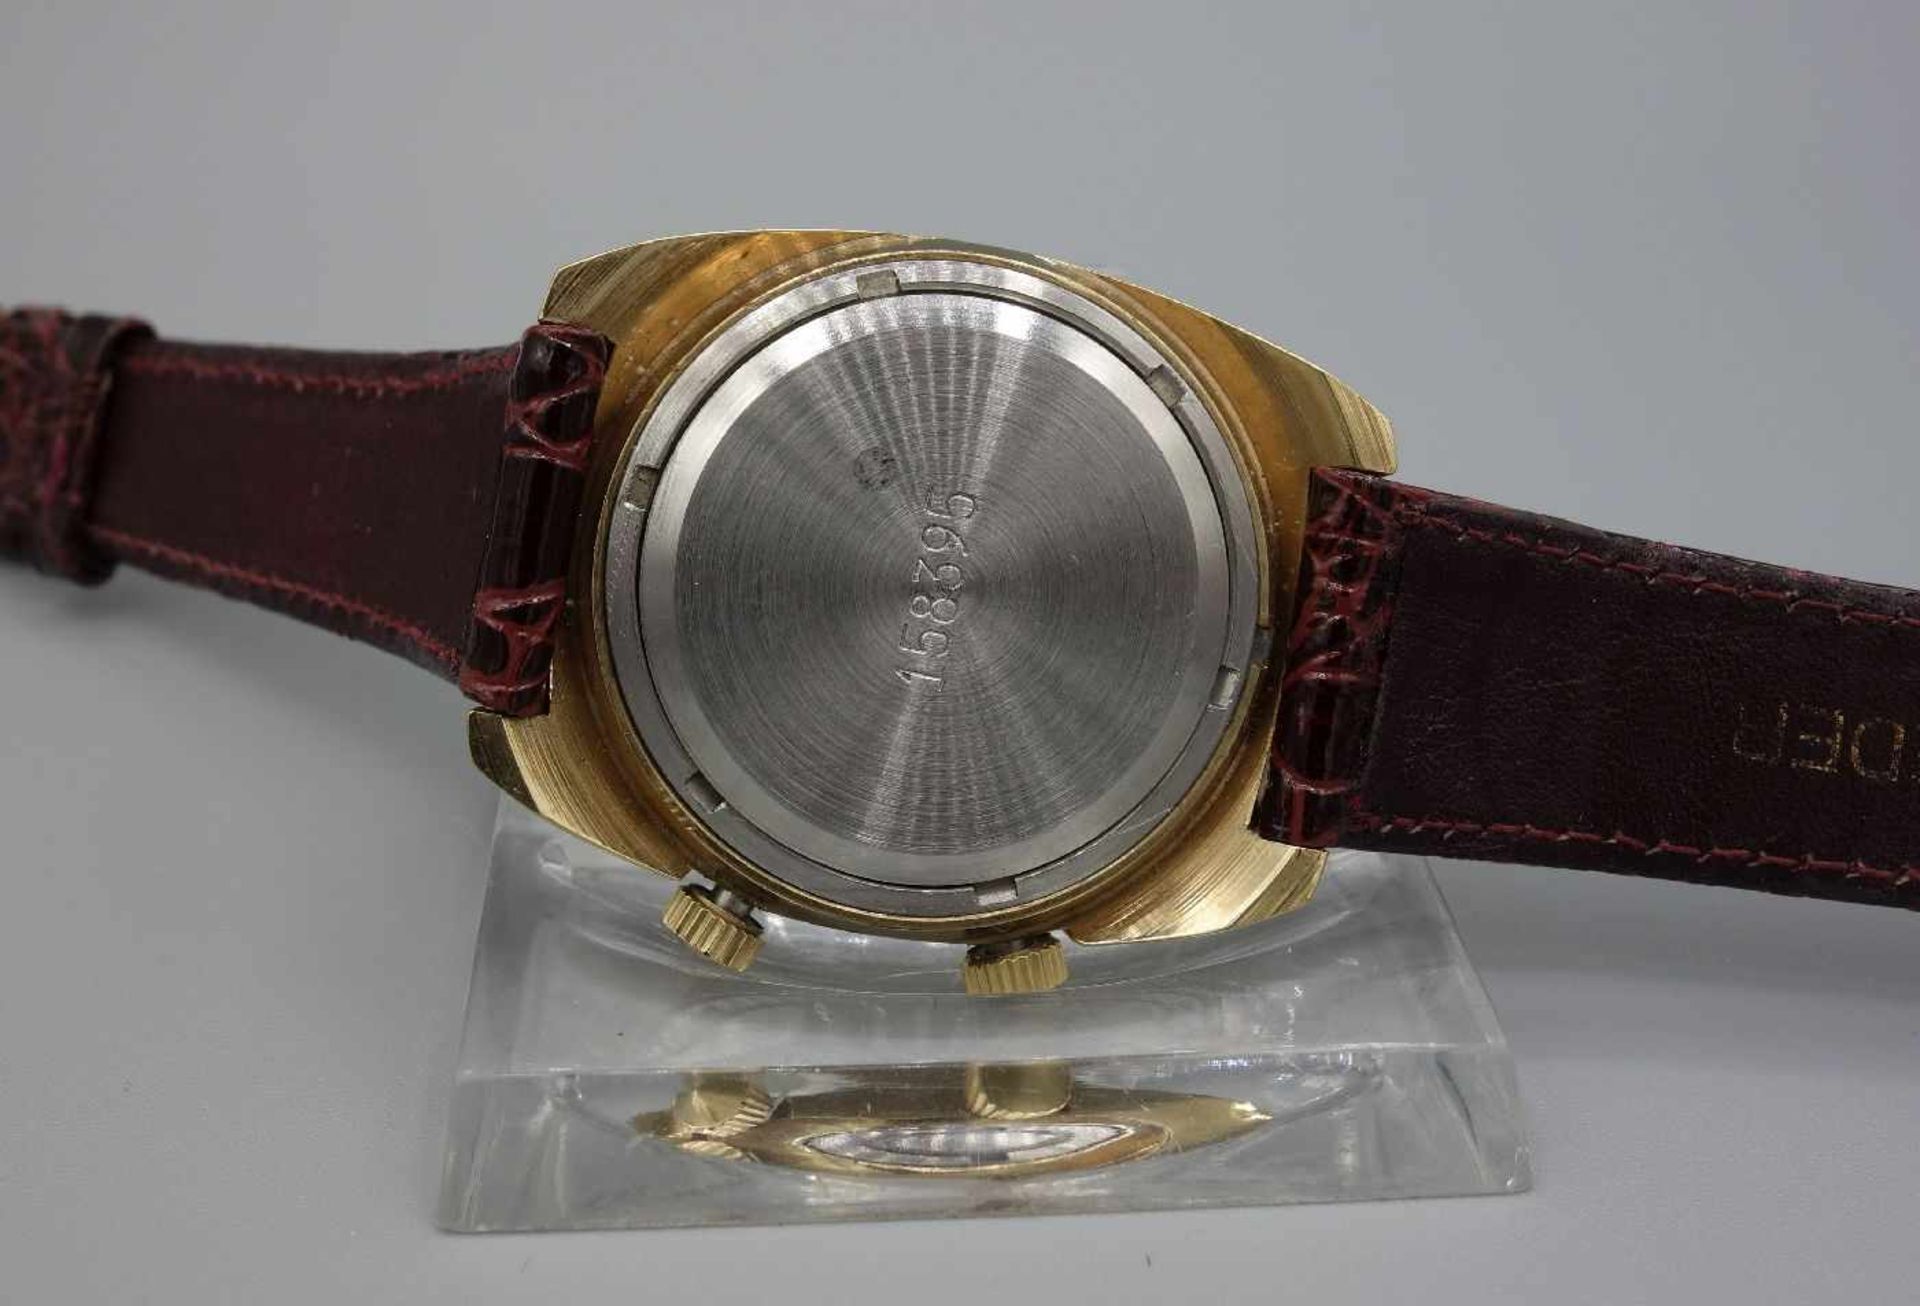 ZWEI ARMBANDUHREN MIT WECKFUNKTION / wristwatches, Russland, Manufaktur Poljot. Handaufzug. 1) - Image 8 of 8